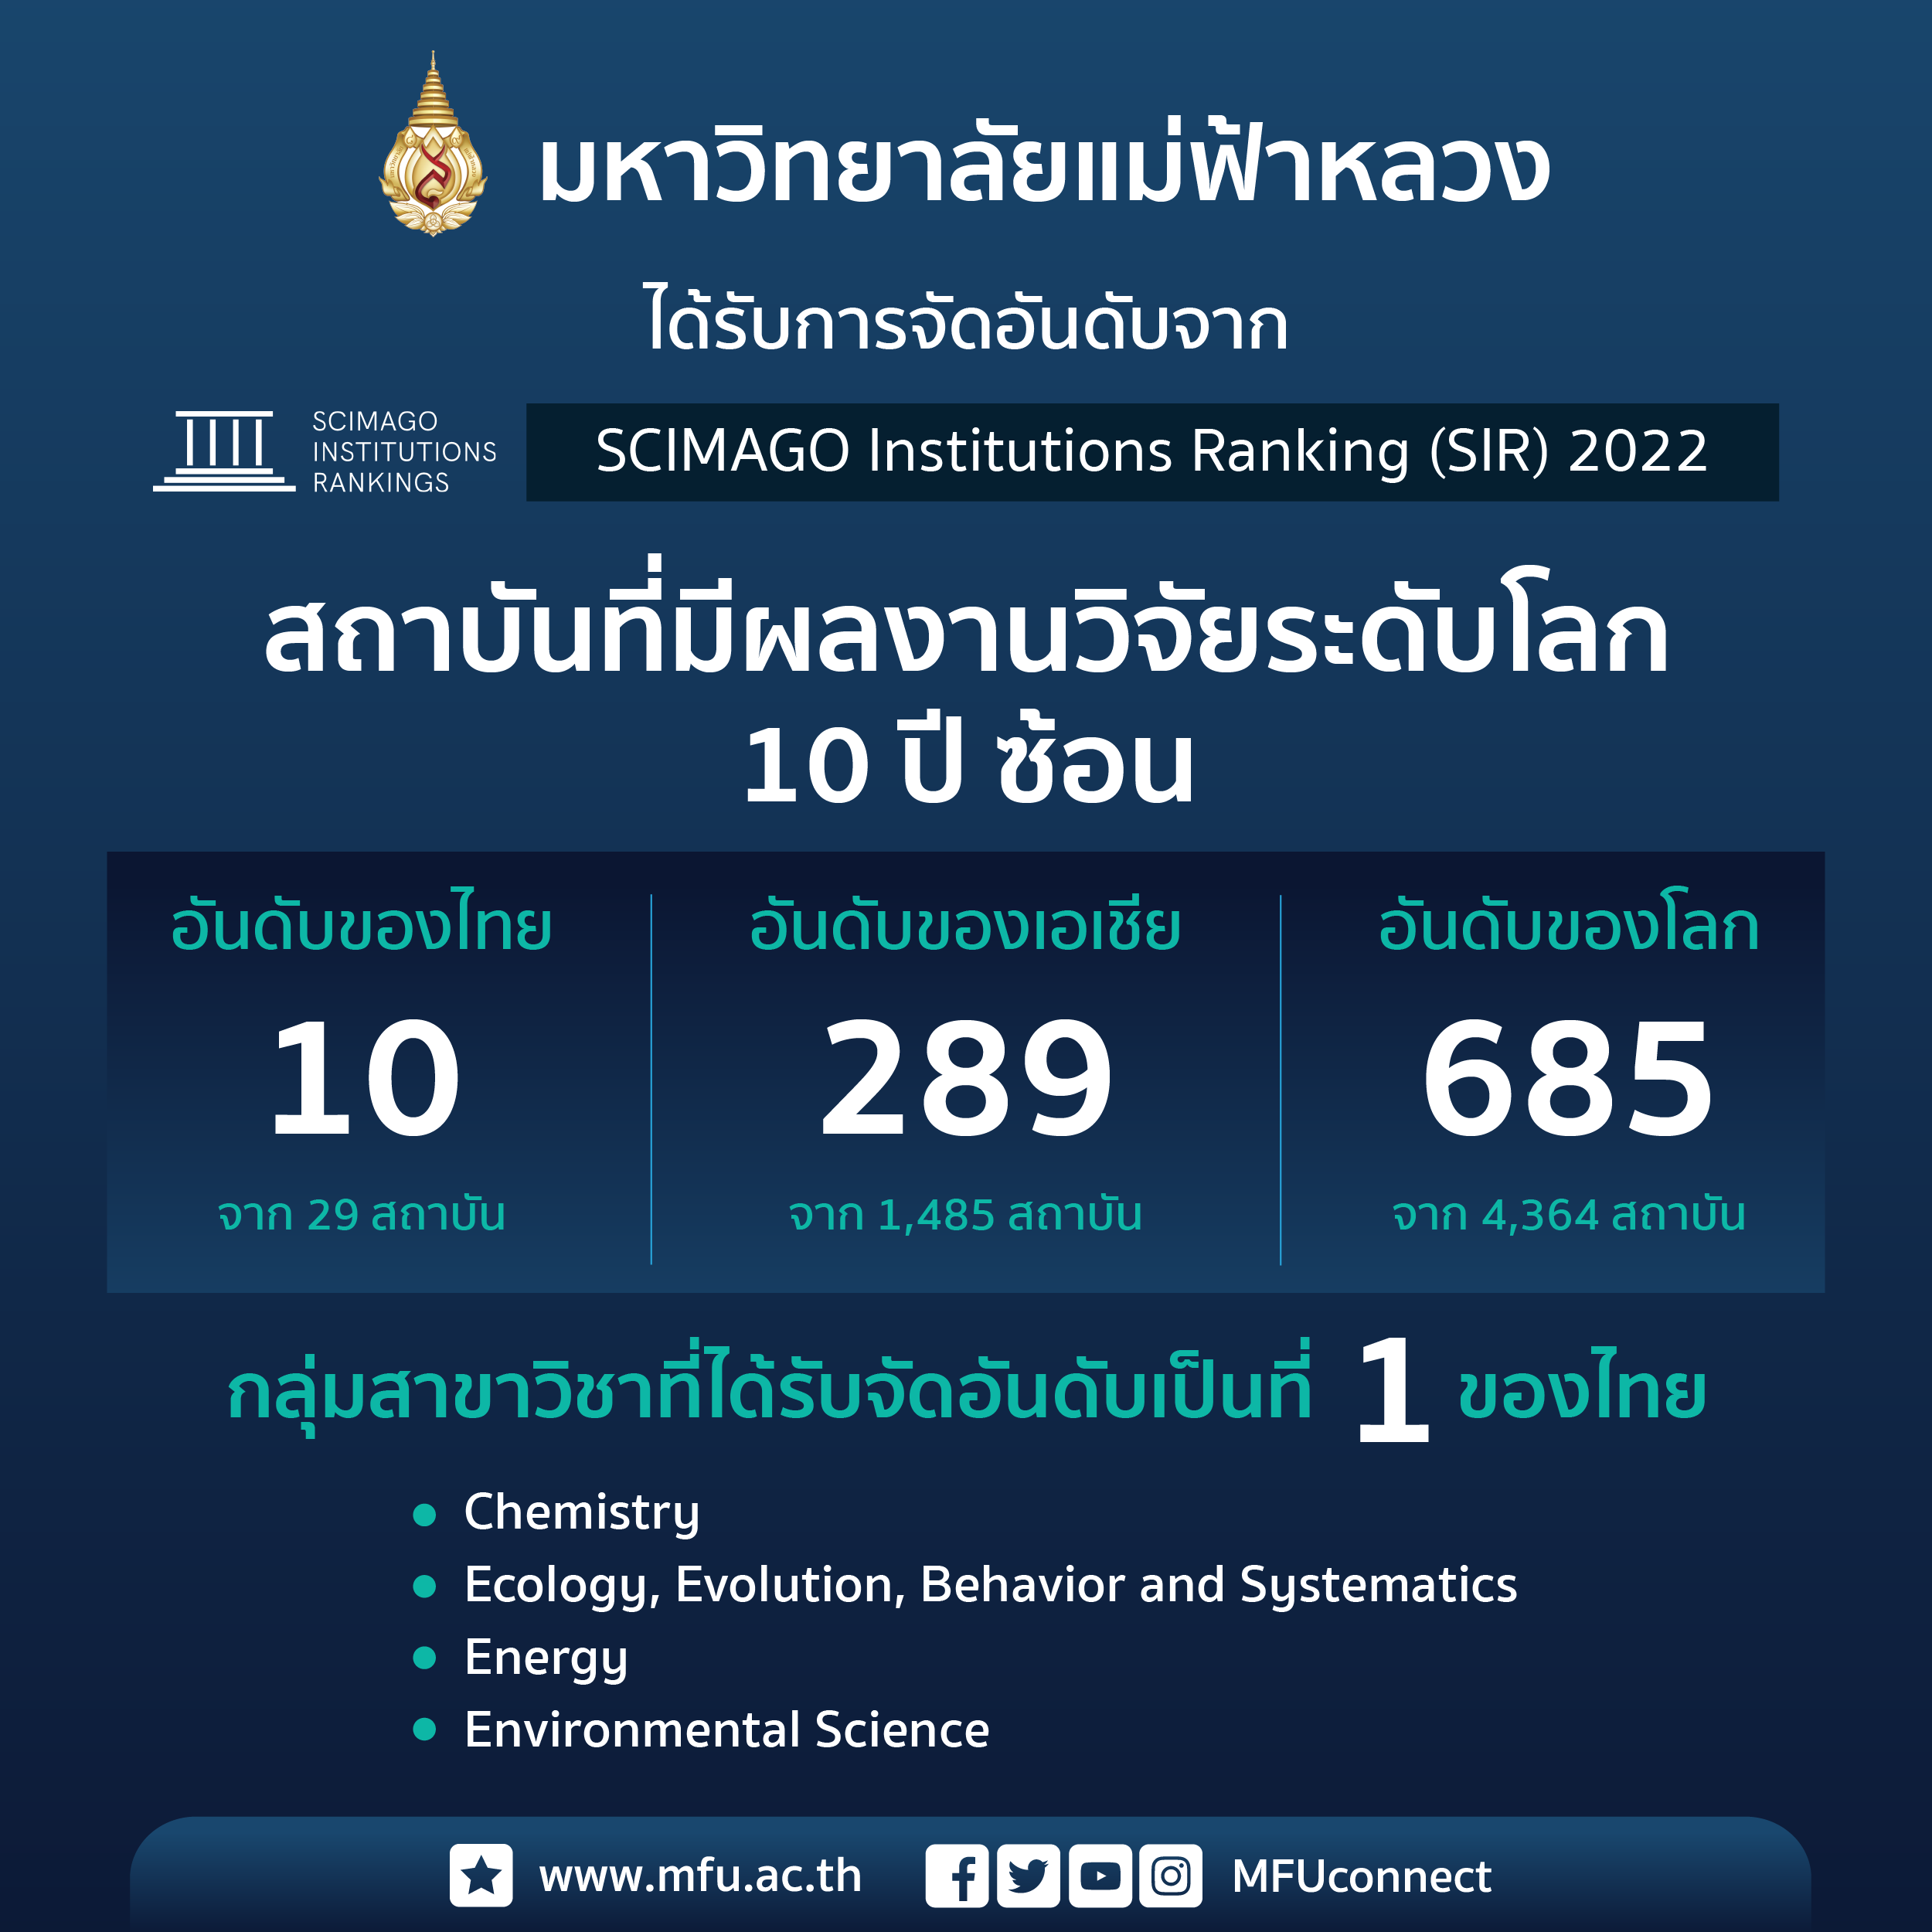 มฟล. ติด 1 ใน 10 สถาบันอุดมศึกษาไทยที่มีผลงานวิจัยระดับนานาชาติ 10 ปีซ้อน (SIR 2022)